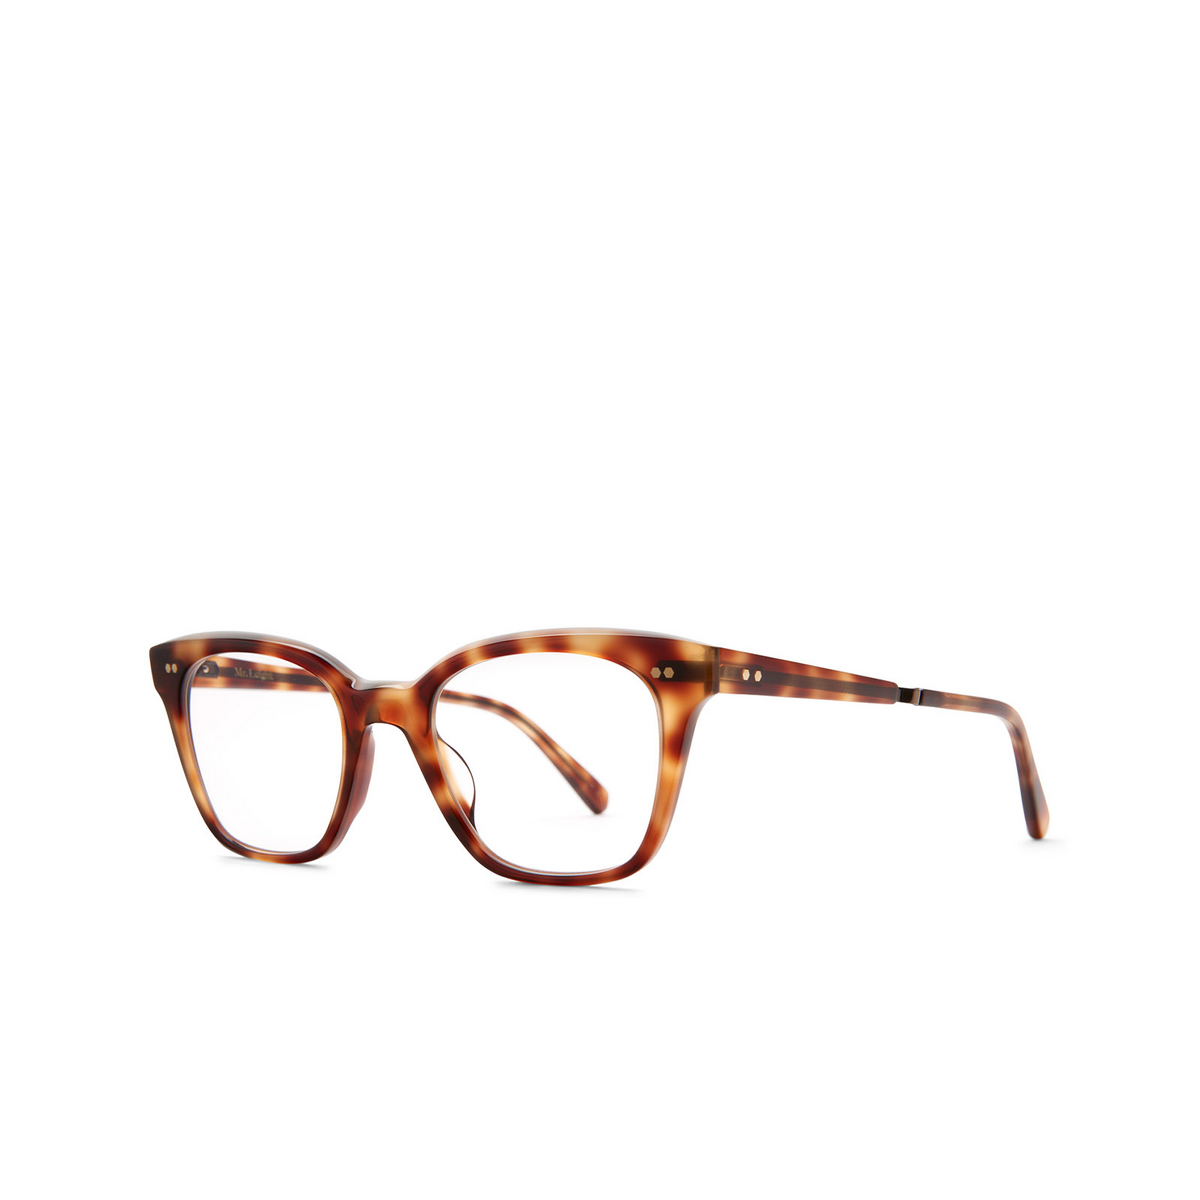 Mr. Leight MORGAN C Eyeglasses CALT-ATG Calico Tortoise-Antique Gold - three-quarters view